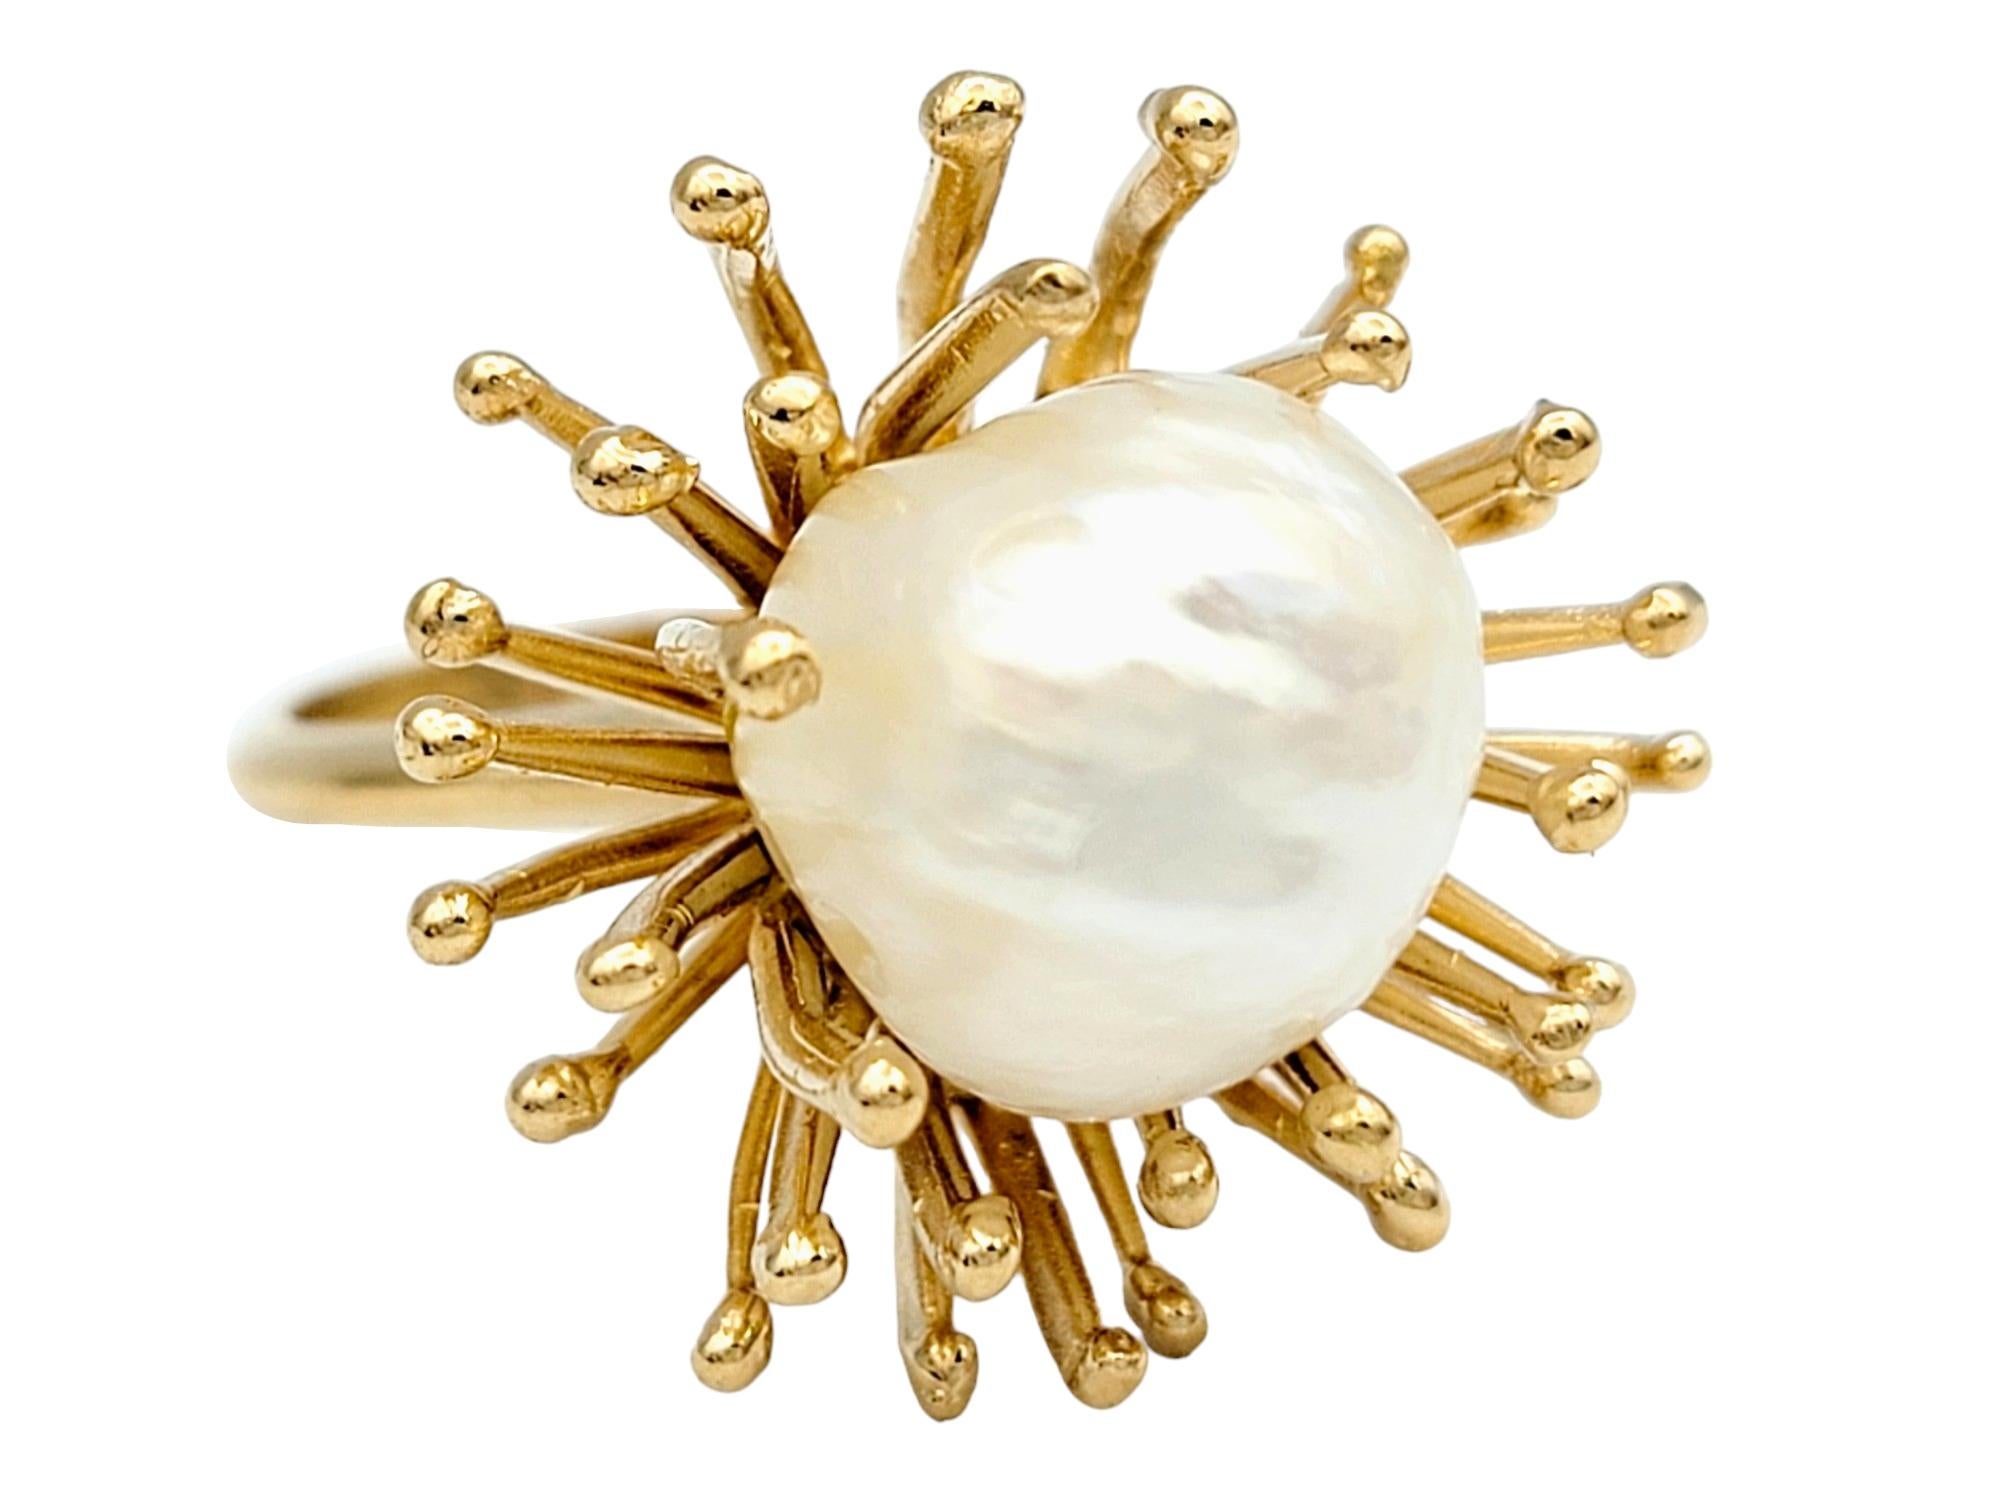 Ringgröße: 6

Dieser exquisite Ring zeigt die natürliche Schönheit einer weißen Barock-Zuchtperle, die durch ein einzigartiges, stacheliges Spray-Motiv elegant ergänzt wird. Die organischen Kurven des Sprühdesigns wickeln sich sanft um die Perle und